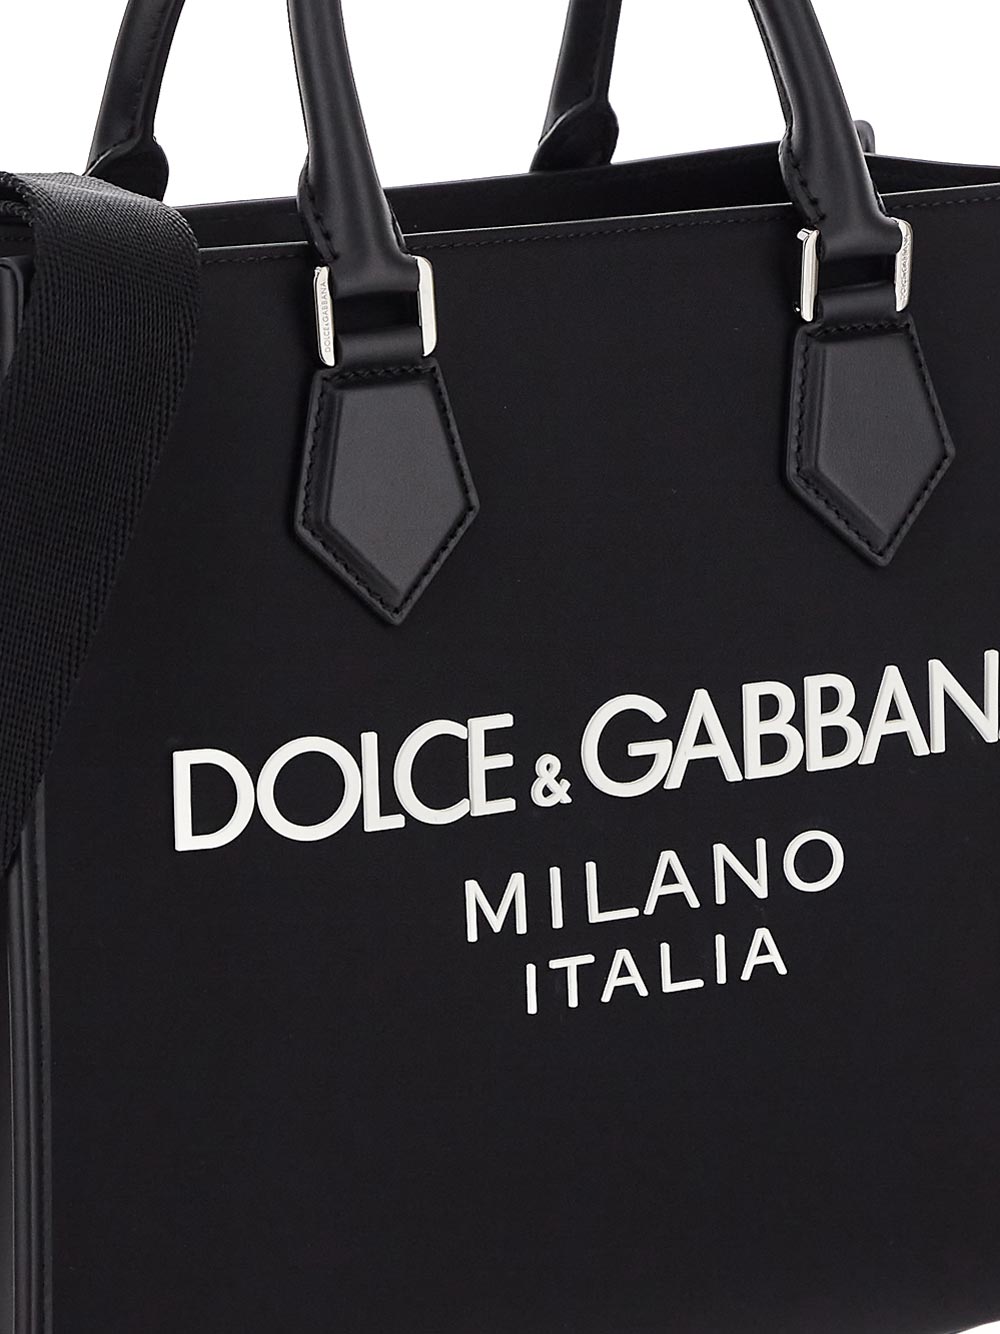 Dolce & Gabbana Large Nylon Shopper With Rubberized Logo